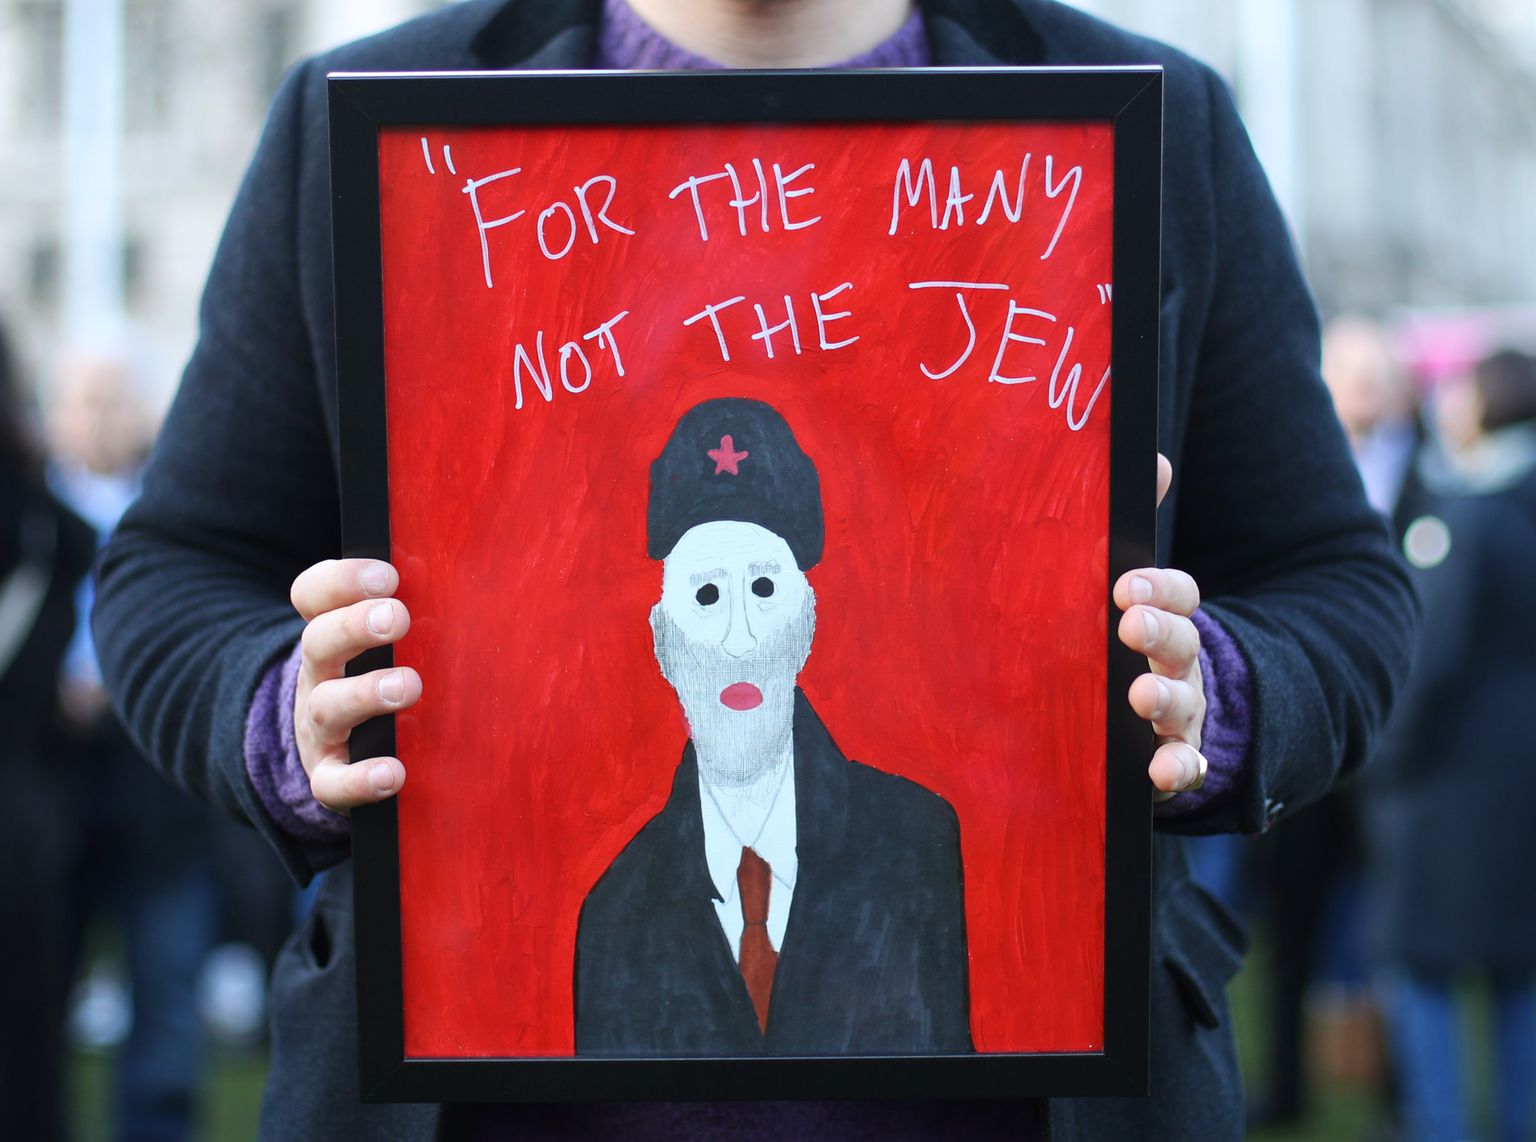 Kui mullustele valimistele läksid leiboristid loosungiga «Paljudele, mitte vähestele», siis selle antisemitismi vastu meelt avaldava protestija plakat omistab Jeremy Corbynile mõtte: «Paljudele, aga mitte juudile».